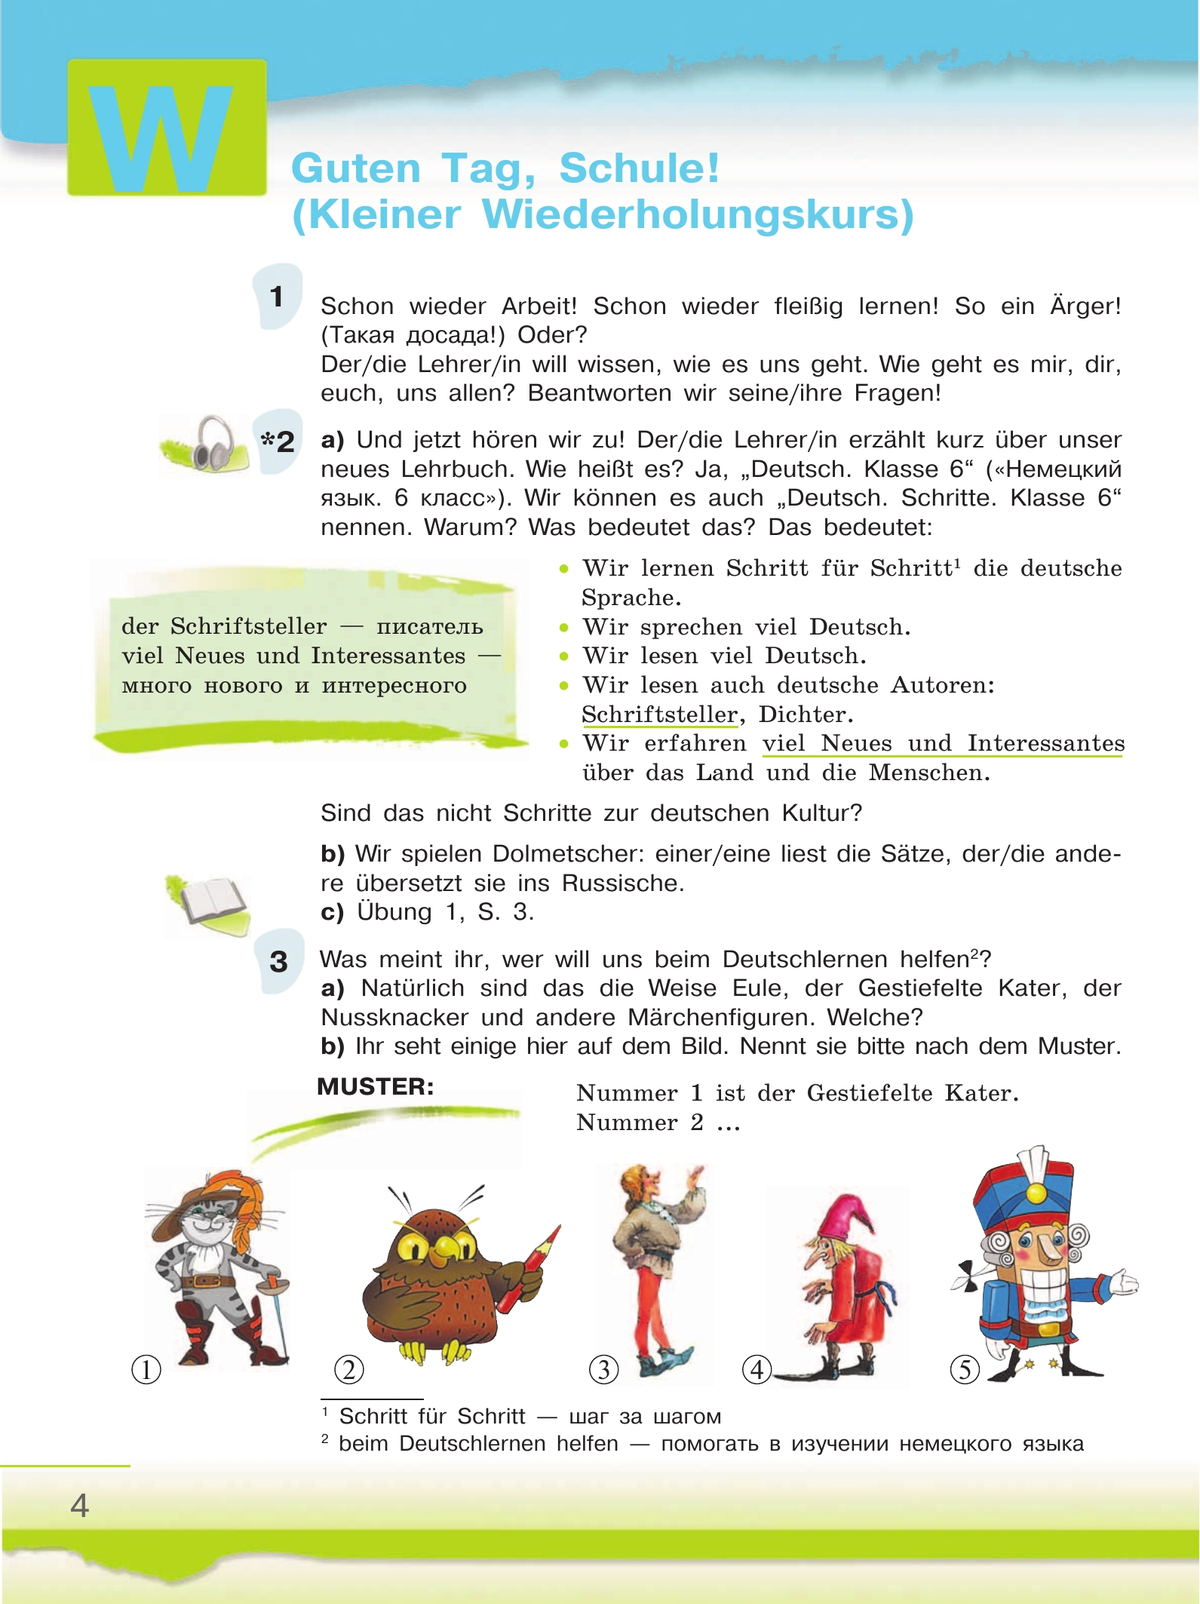 Немецкий язык. 6 класс. Учебник. В 2 ч. Часть 1 10